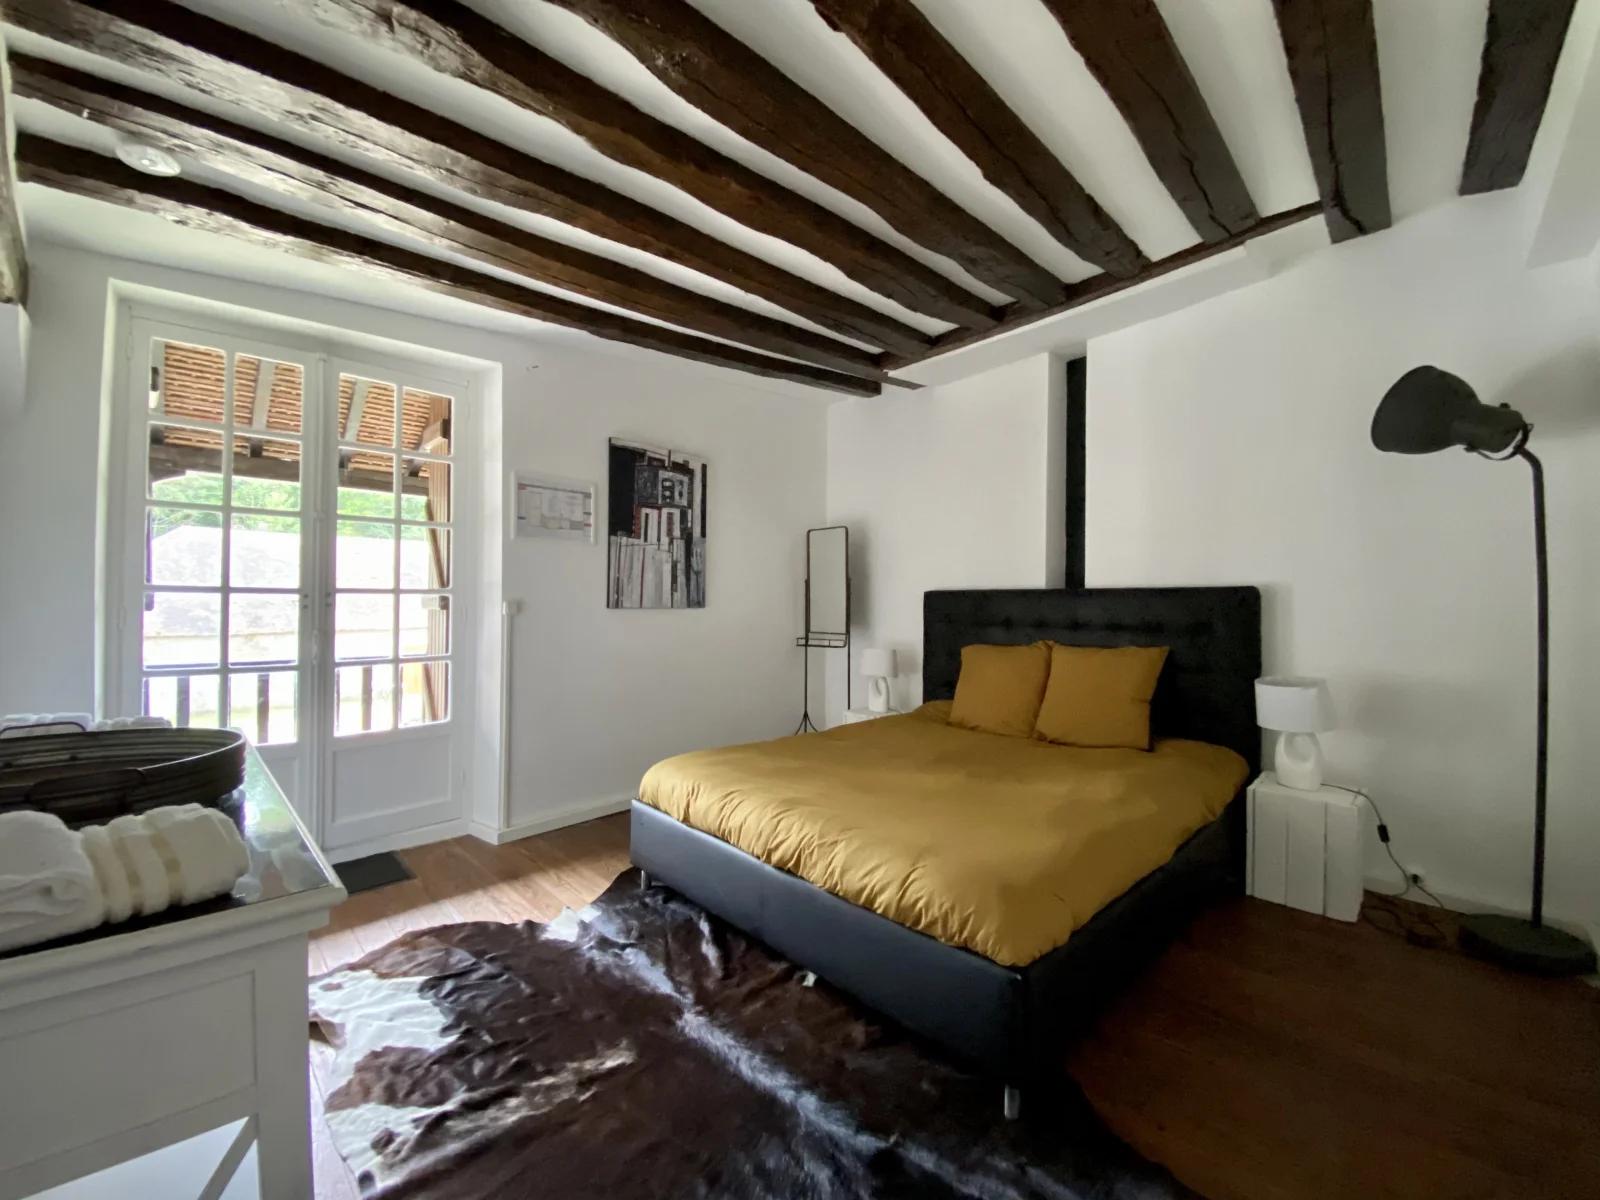 Dormitorio dentro Una finca excepcional y sus terrenos arbolados - 4